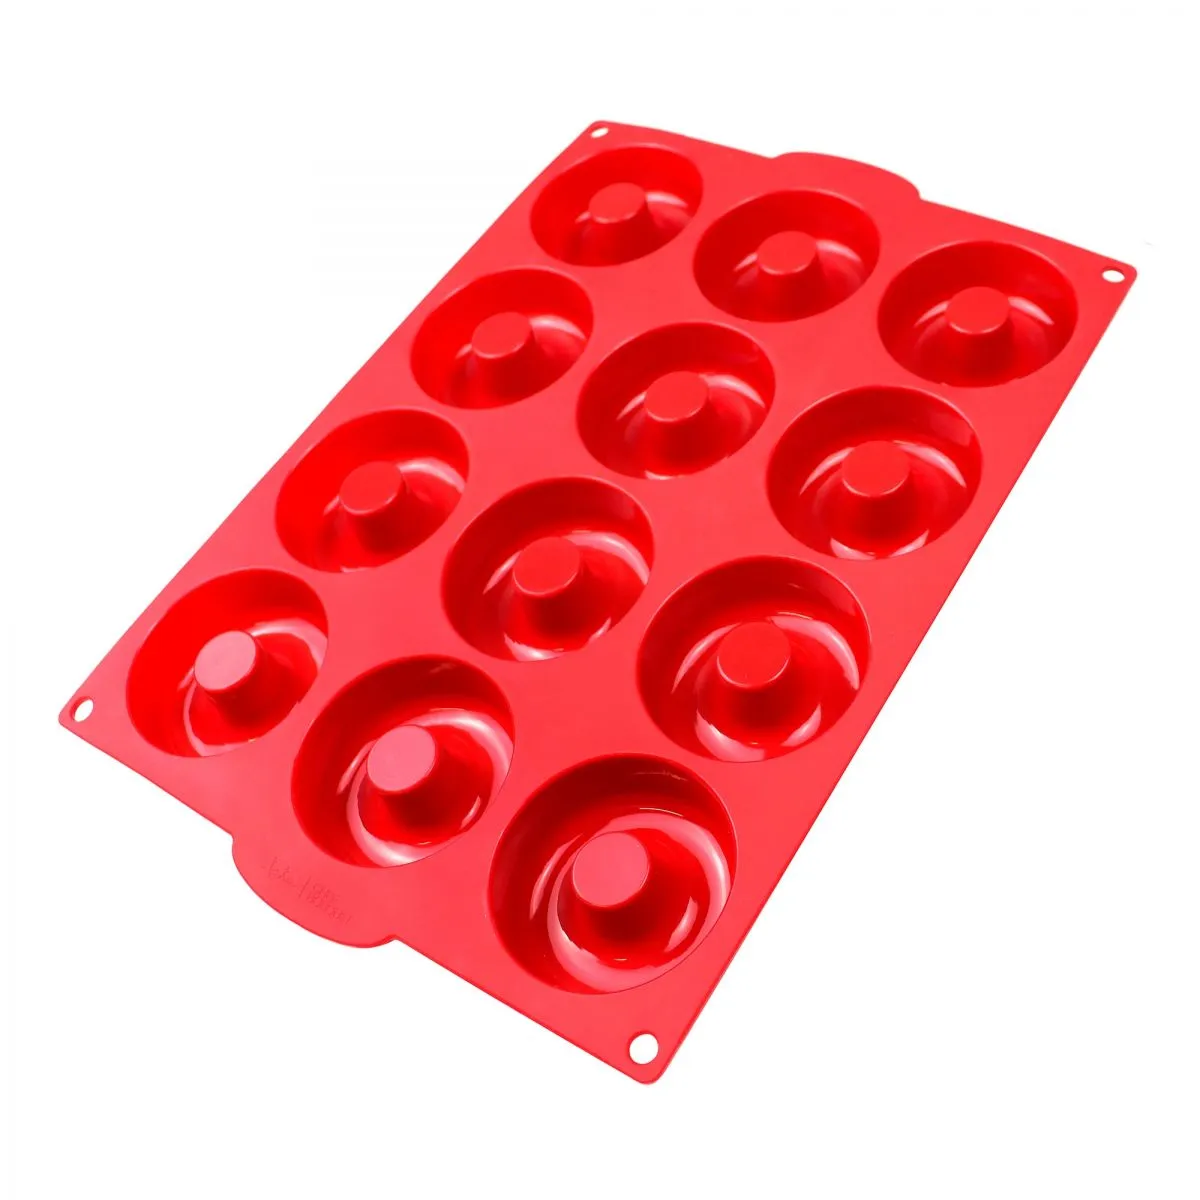  Chefast Kit de moldes de silicona para donas – Moldes